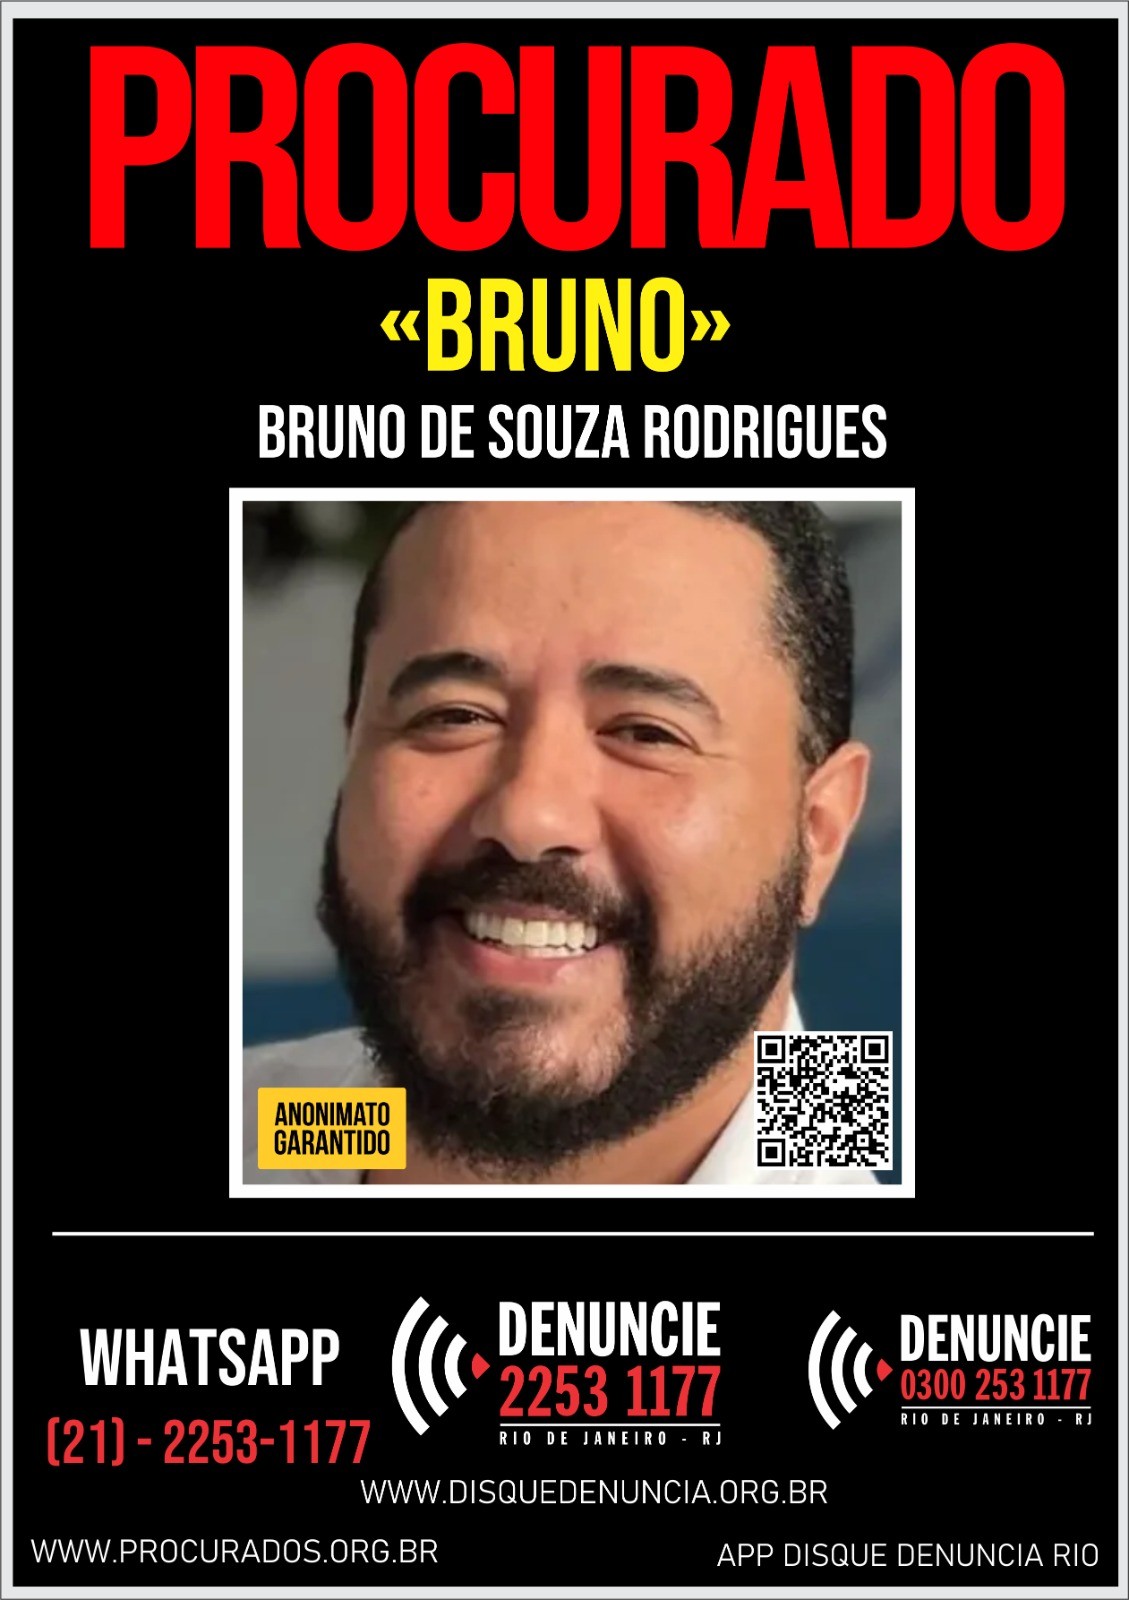 Jeff Machado: Disque denúncia divulga cartaz com foto de Bruno Rodrigues, suspeito pelo homicídio